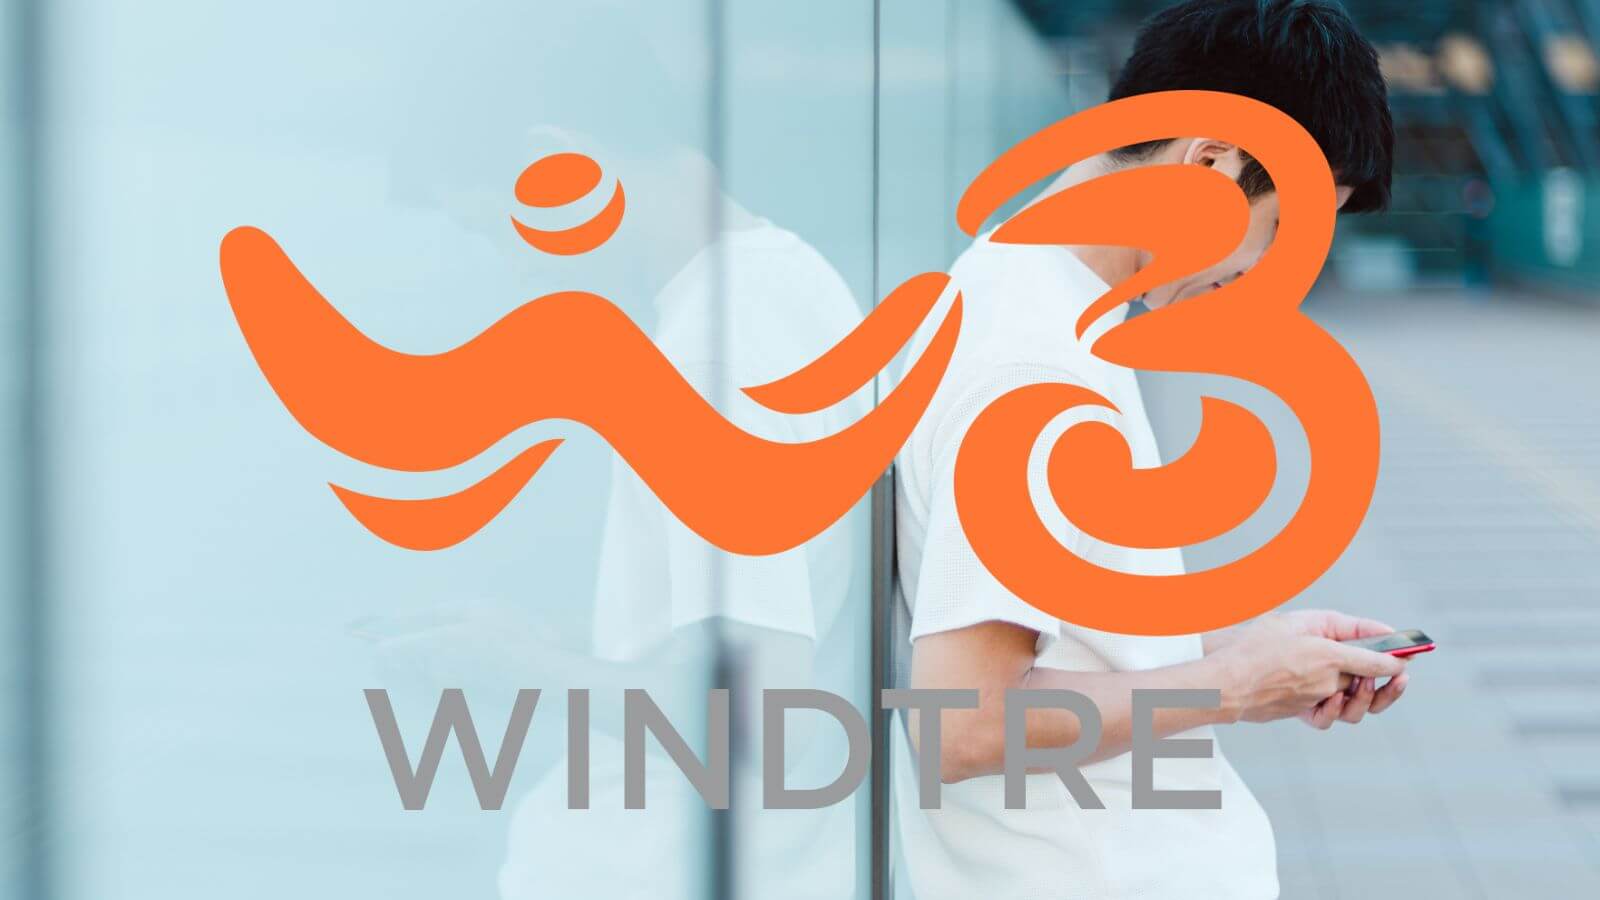 WindTre, quest'offerta vi farà cambiare operatore telefonico